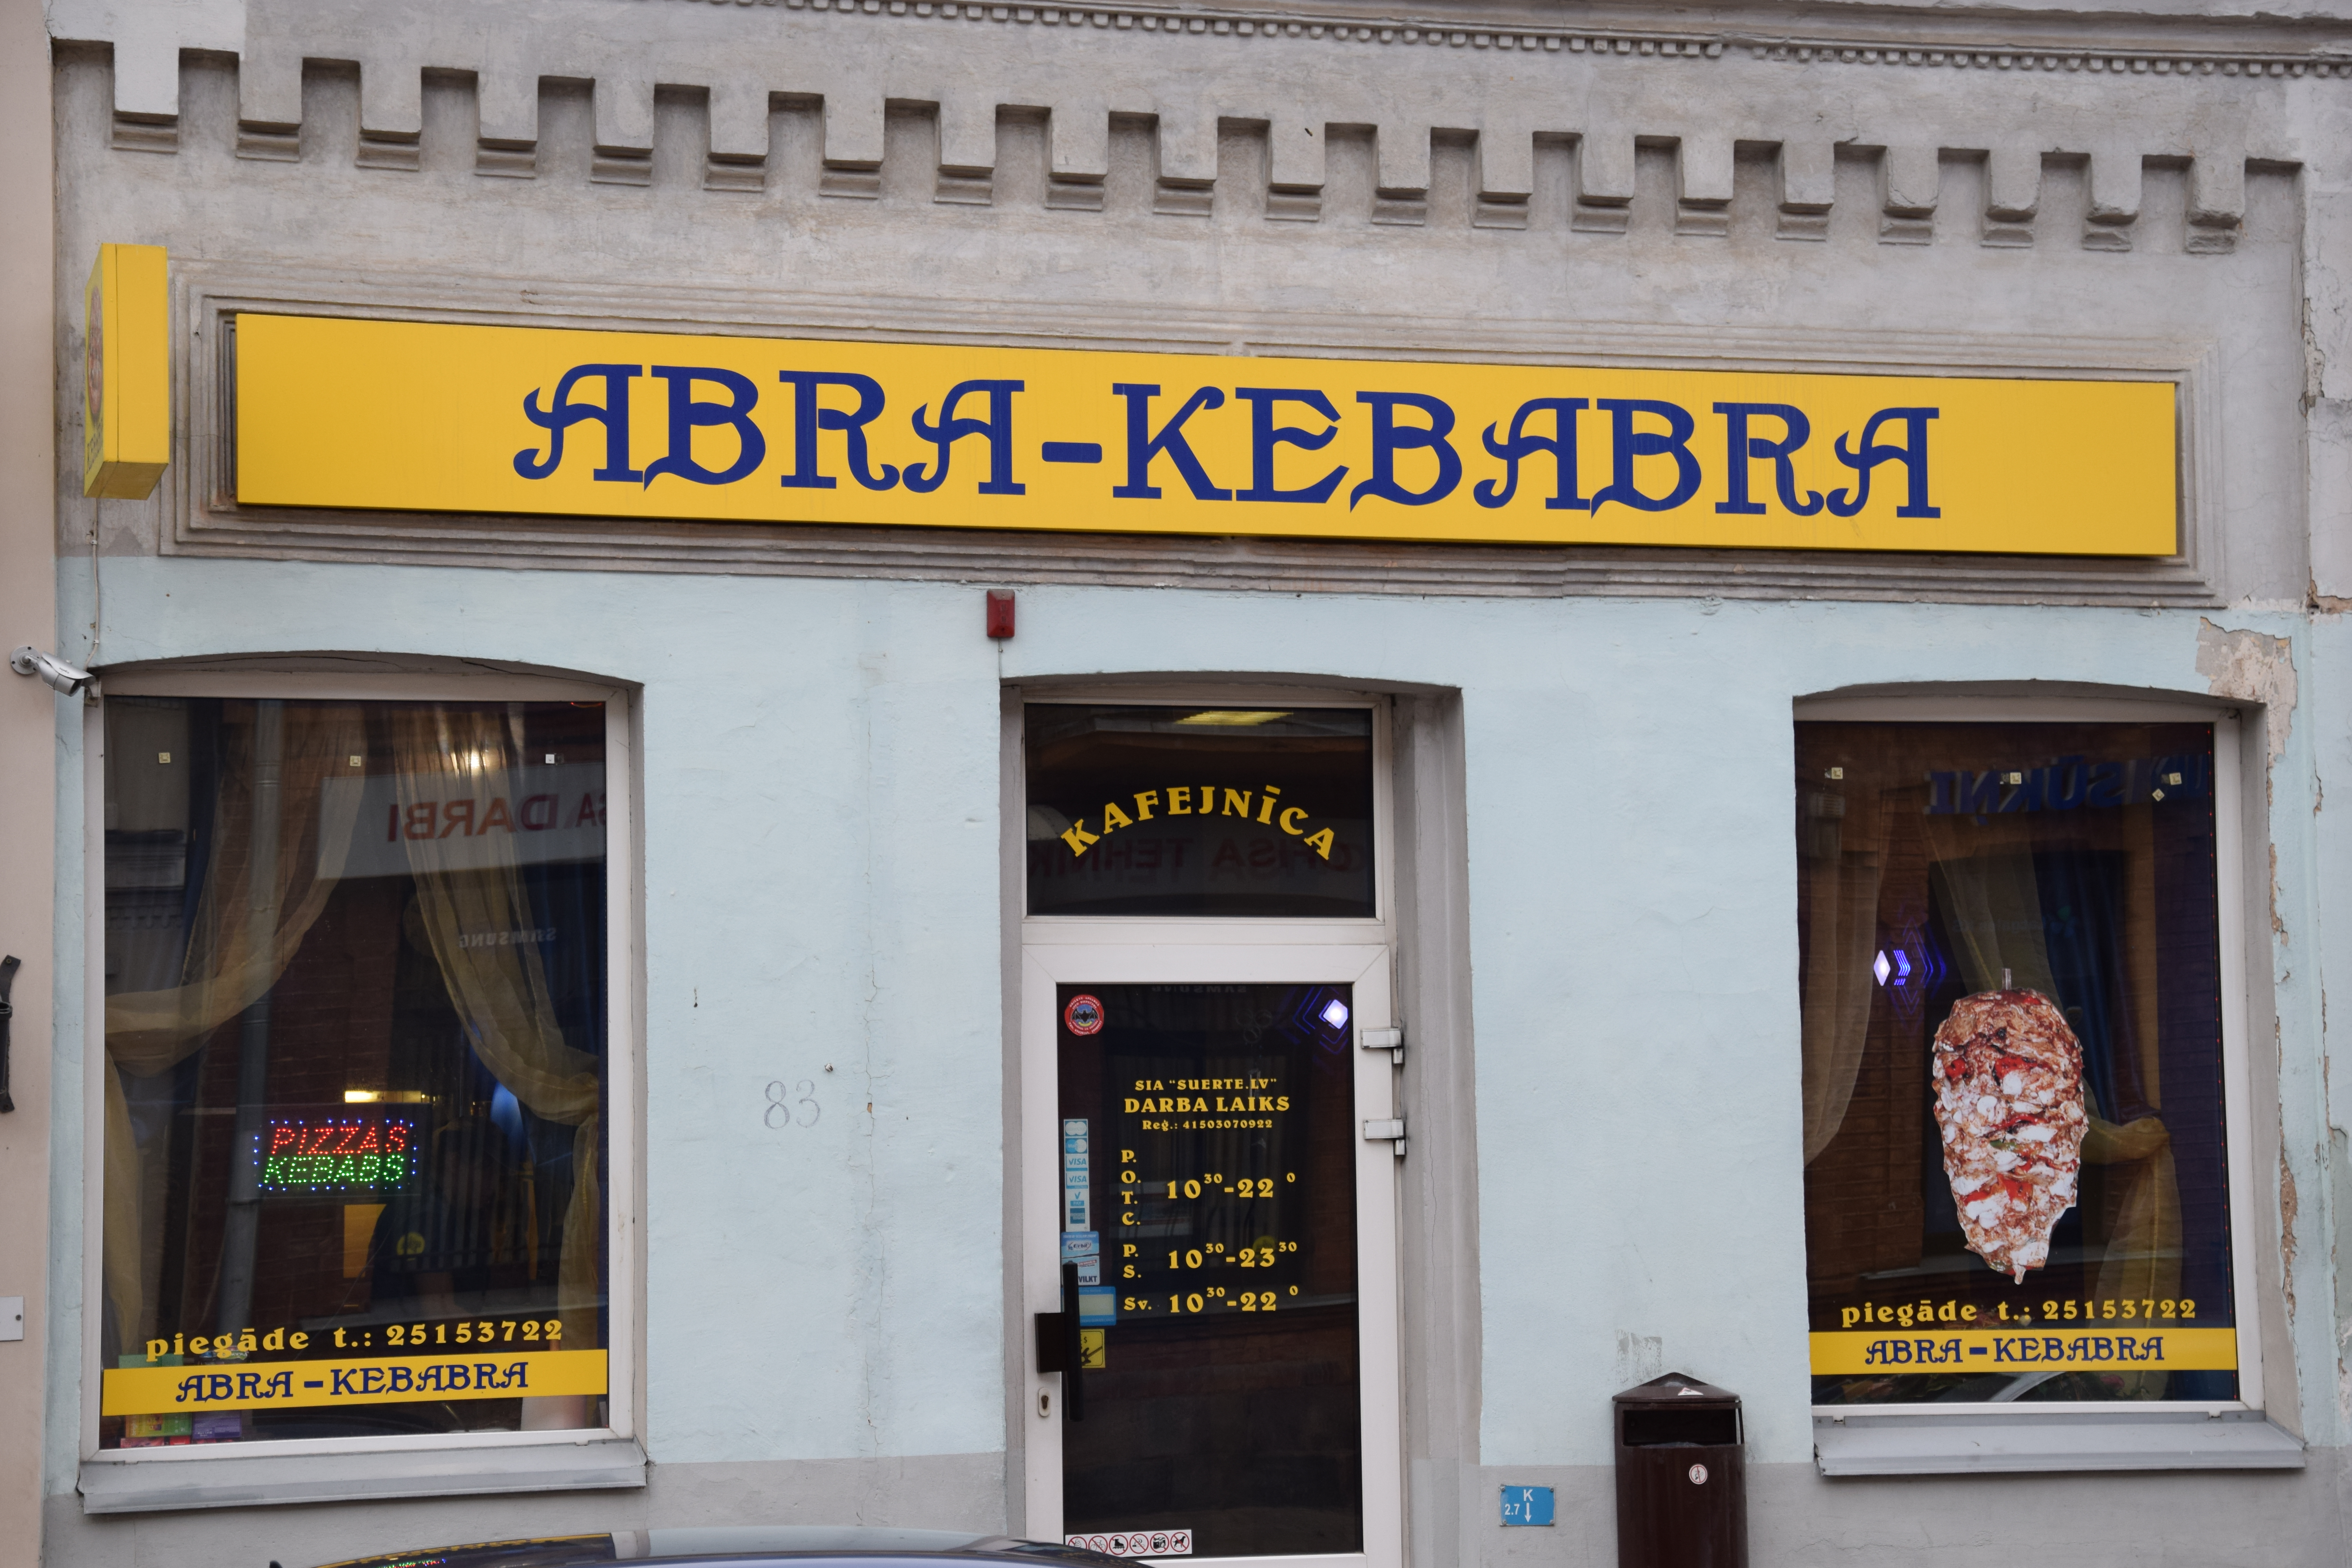 Kavinė „Abra – Kebabra“